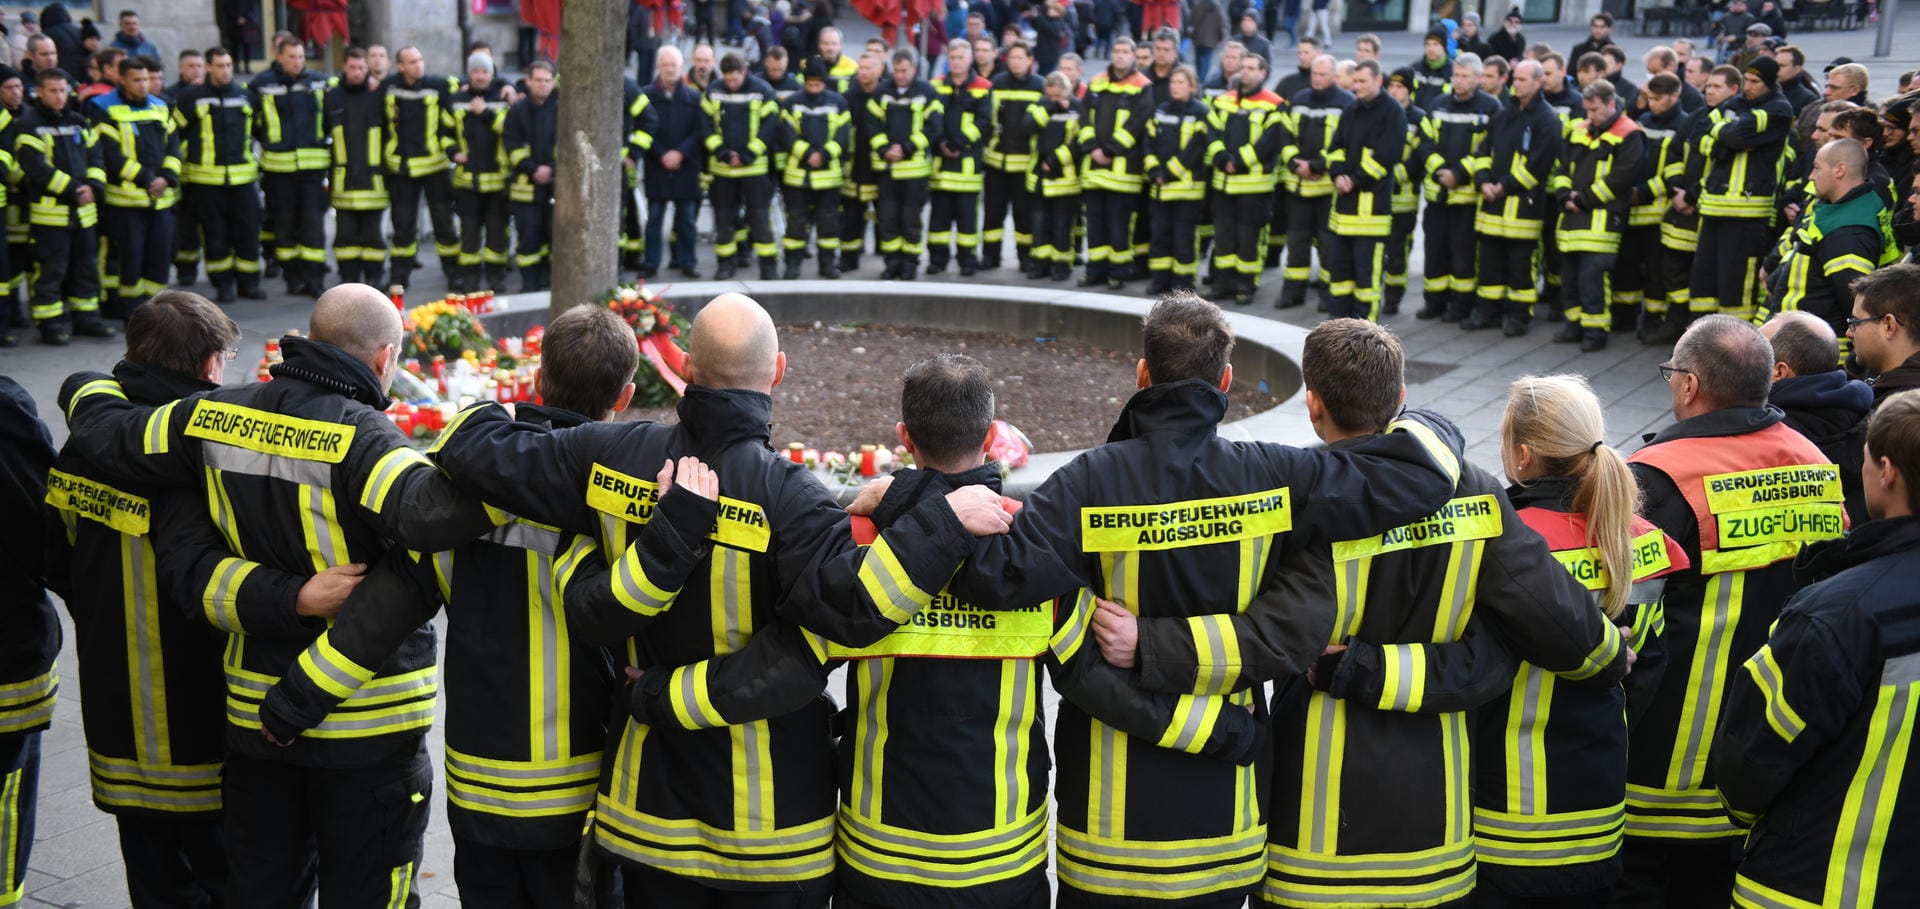 Feuerwehrmänner haben sich in Trauer um den getöteten Kollege versammelt: Das Opfer des Vorfalls war Mitglied der Berufsfeuerwehr Augsburg.